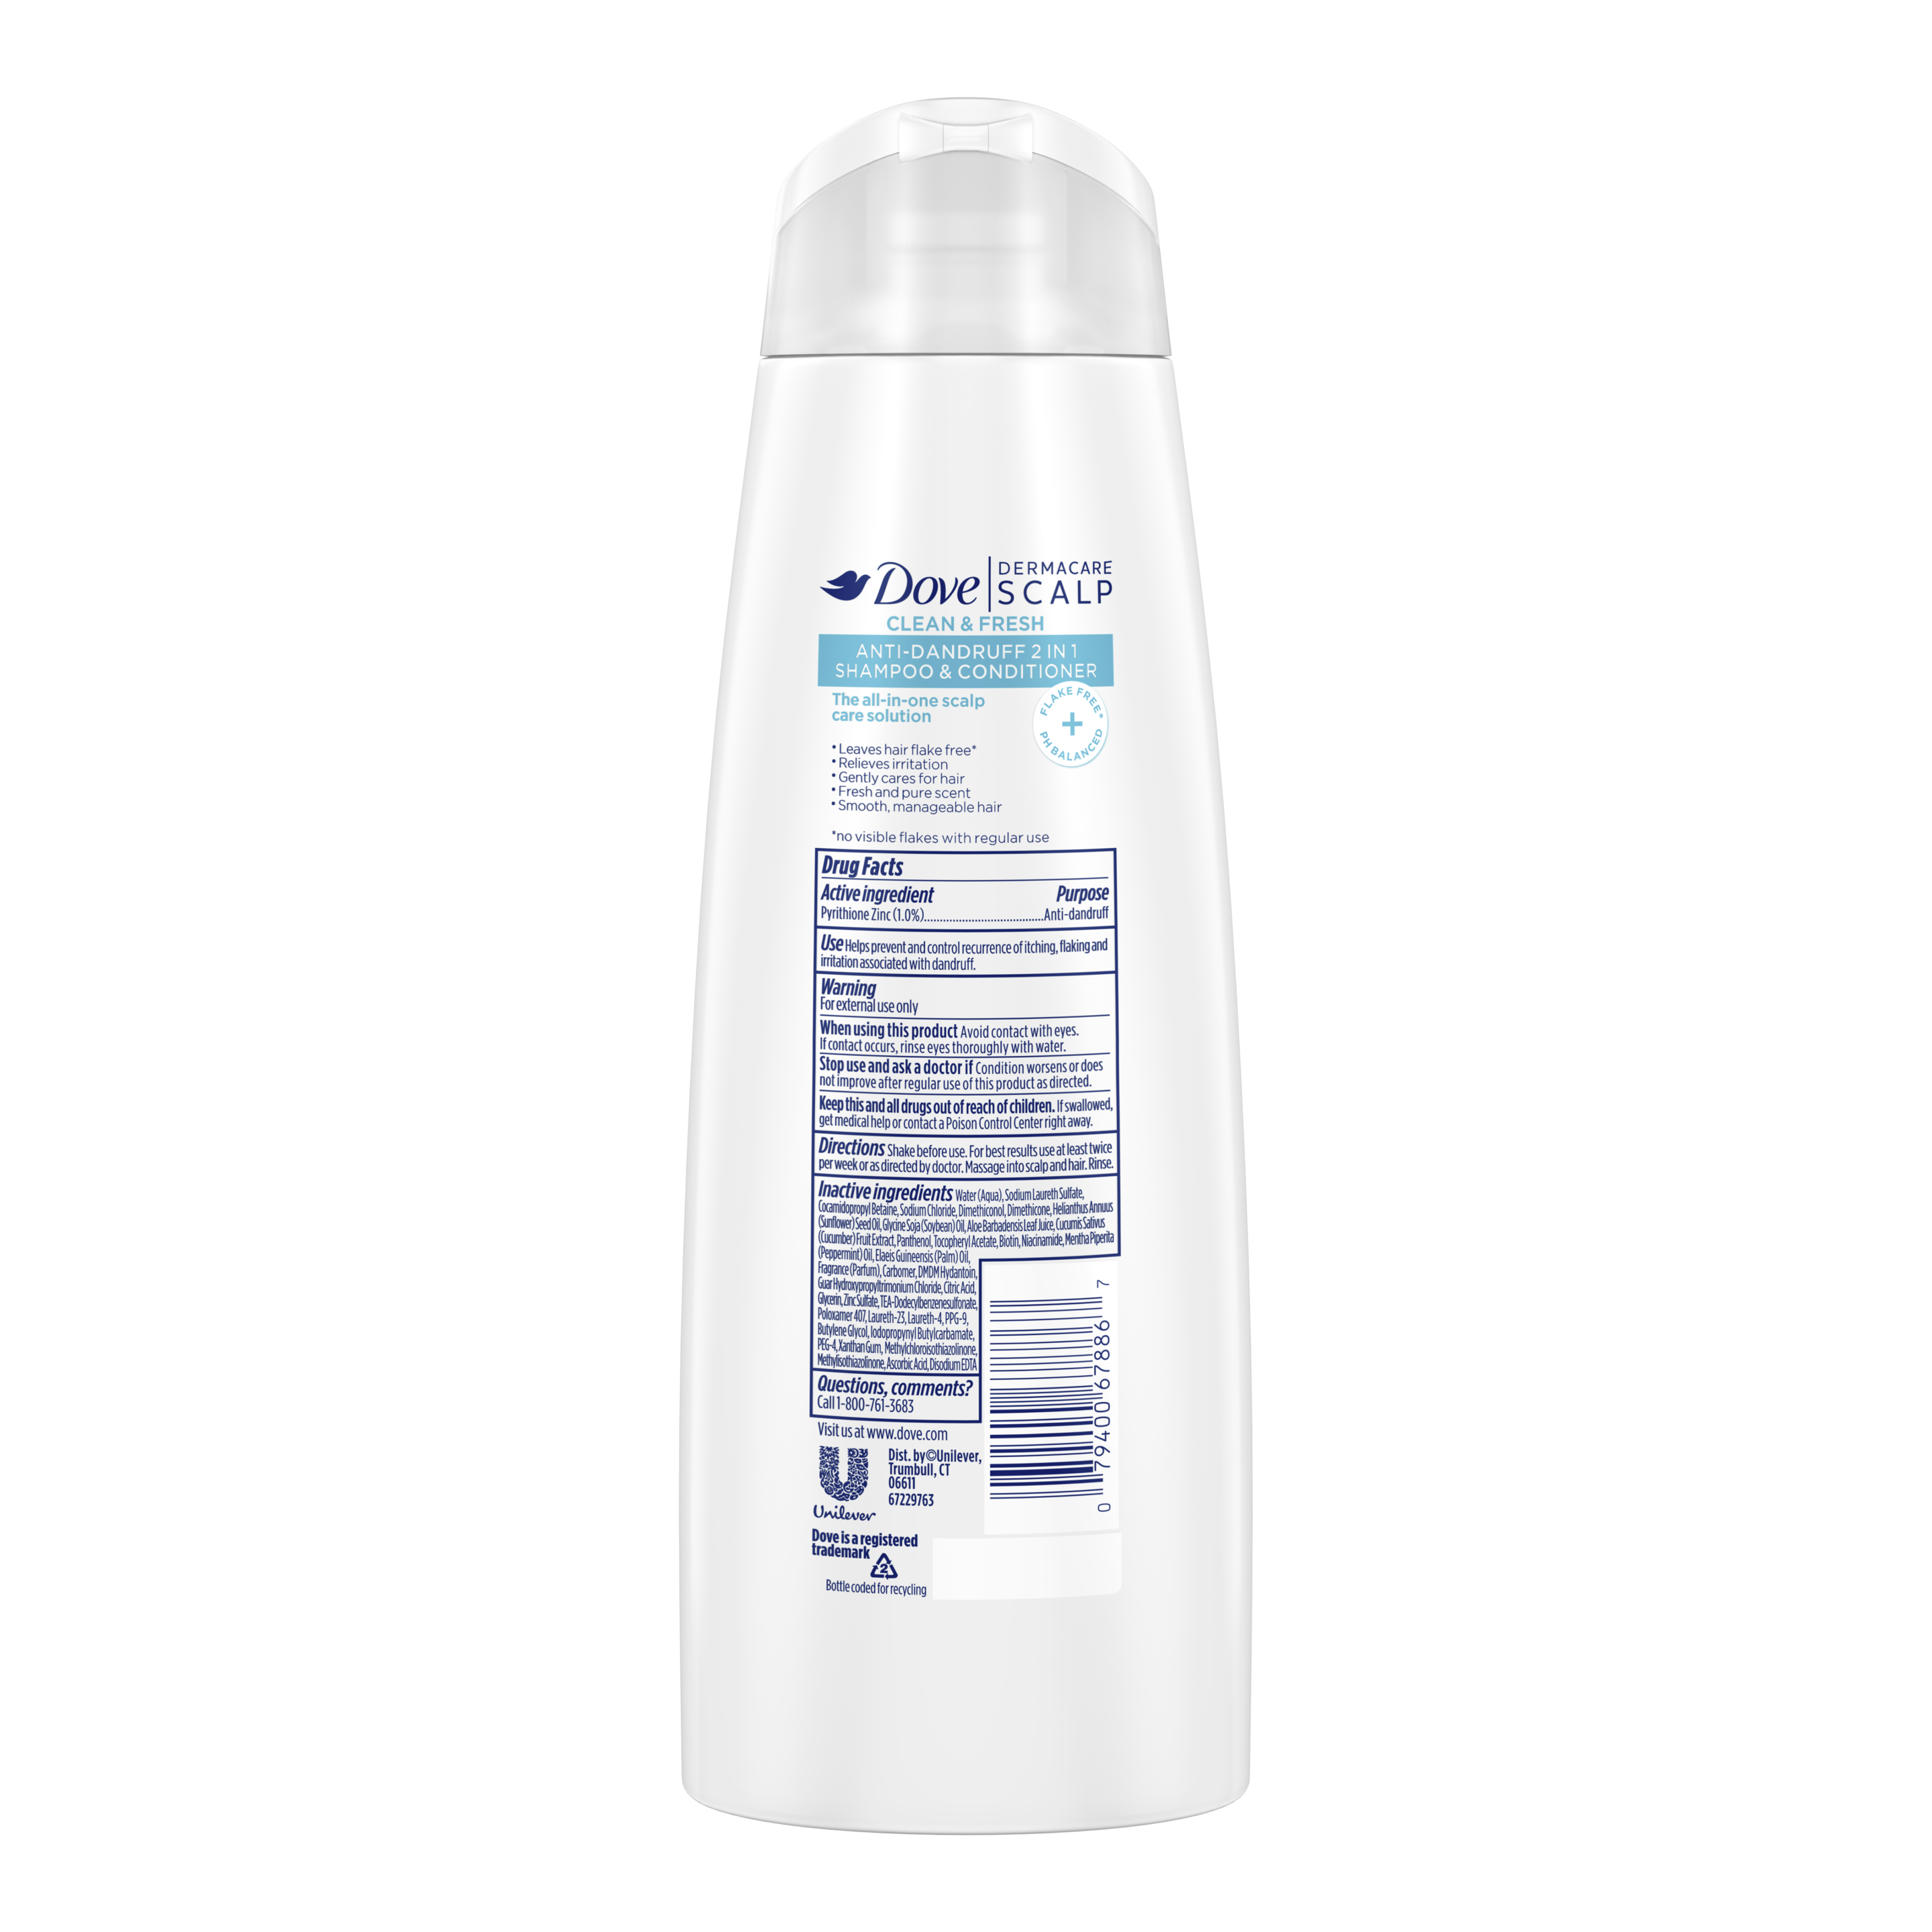 Dove Dermacare Scalp Clean & Fresh Anti-Dandruff 2 in 1 Shampoo & Conditioner 12 oz